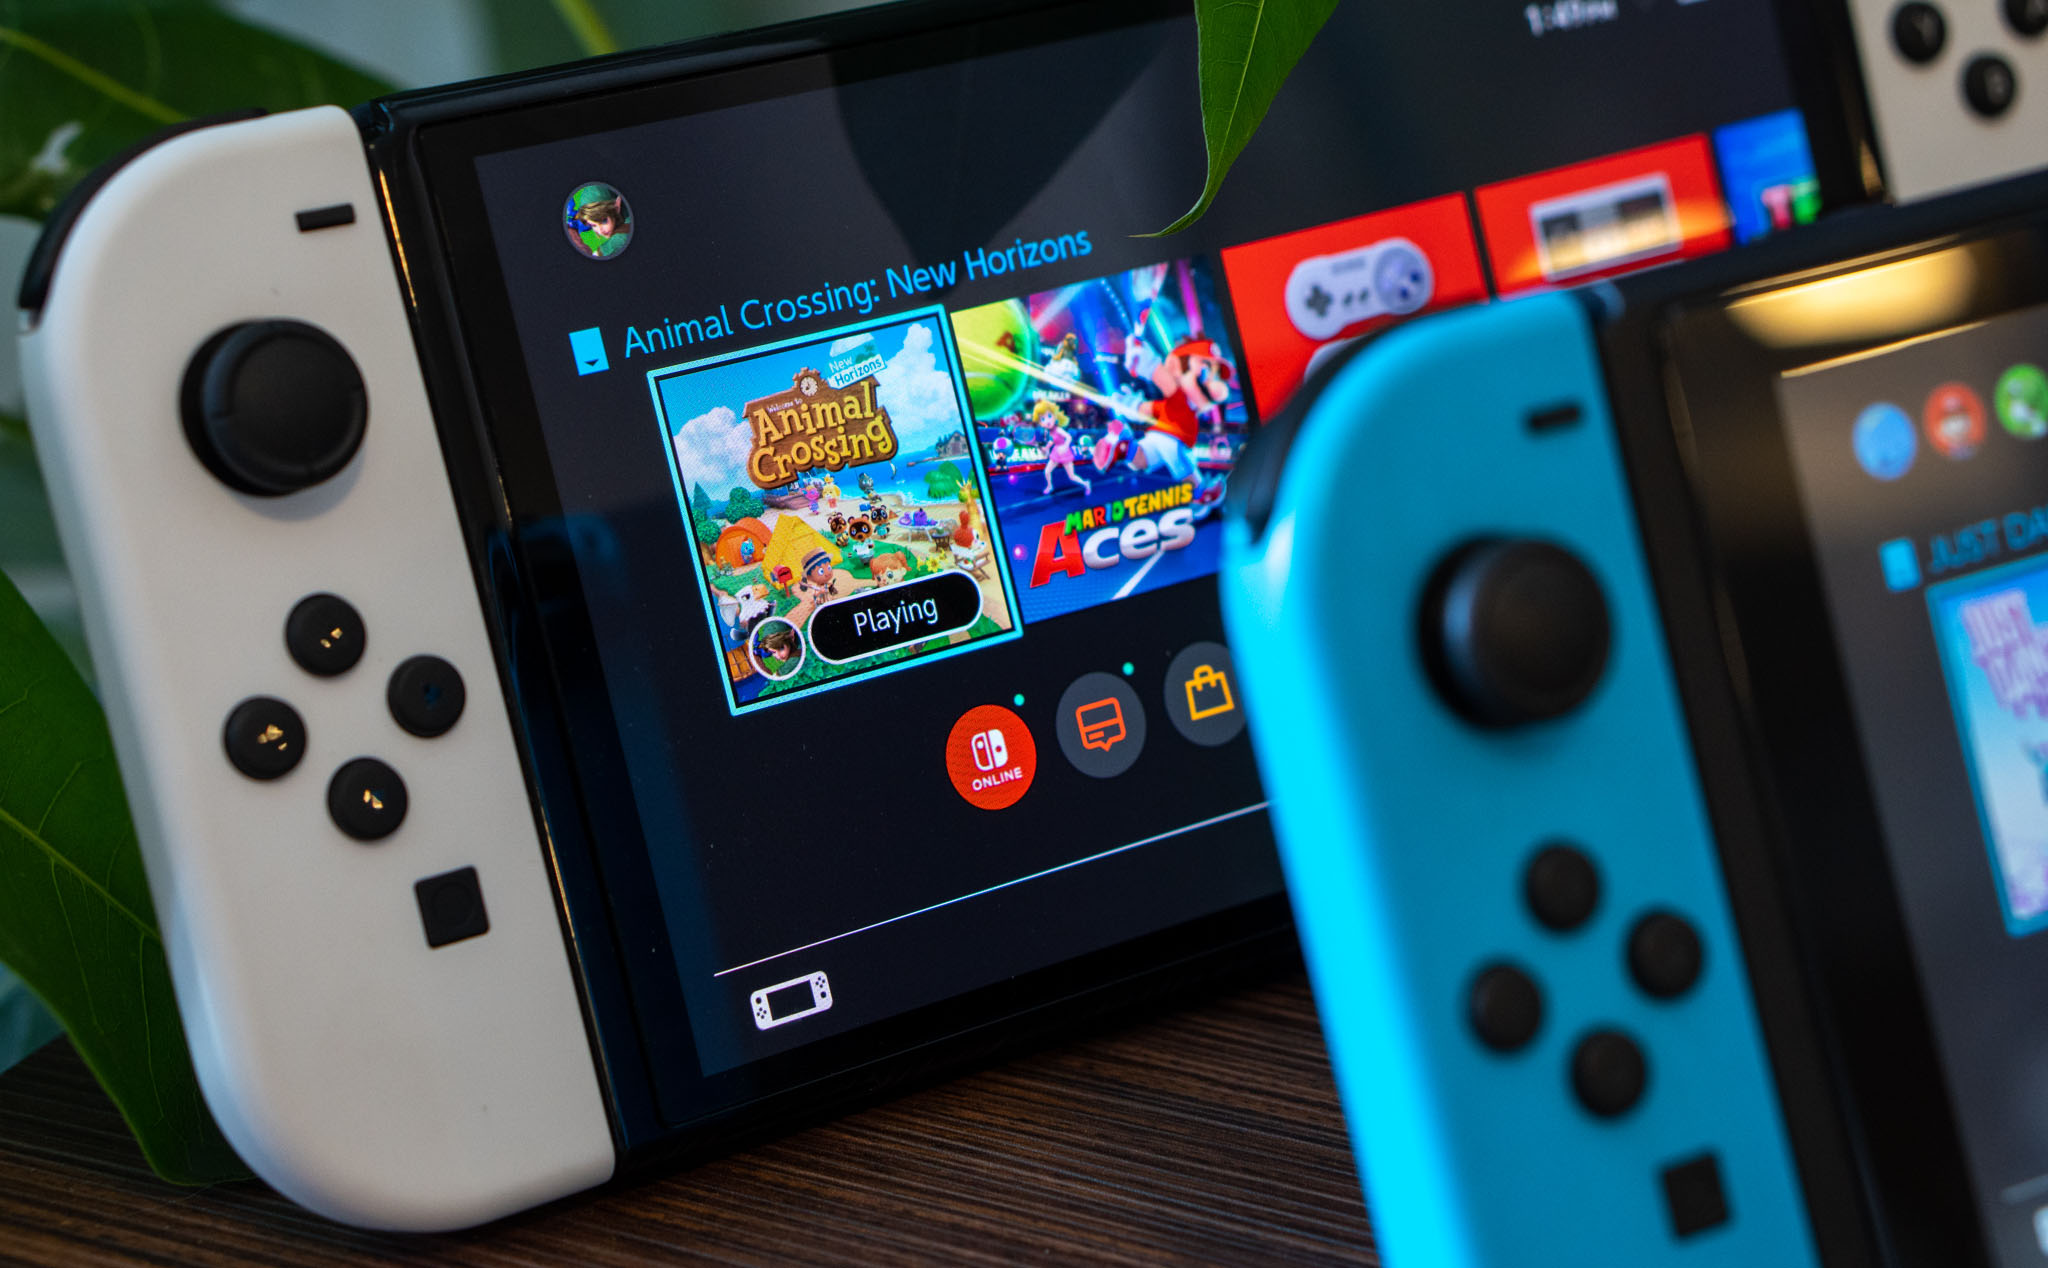 Denuvo ra mắt công cụ mới, chỉ dùng để bảo vệ bản quyền game Nintendo Switch